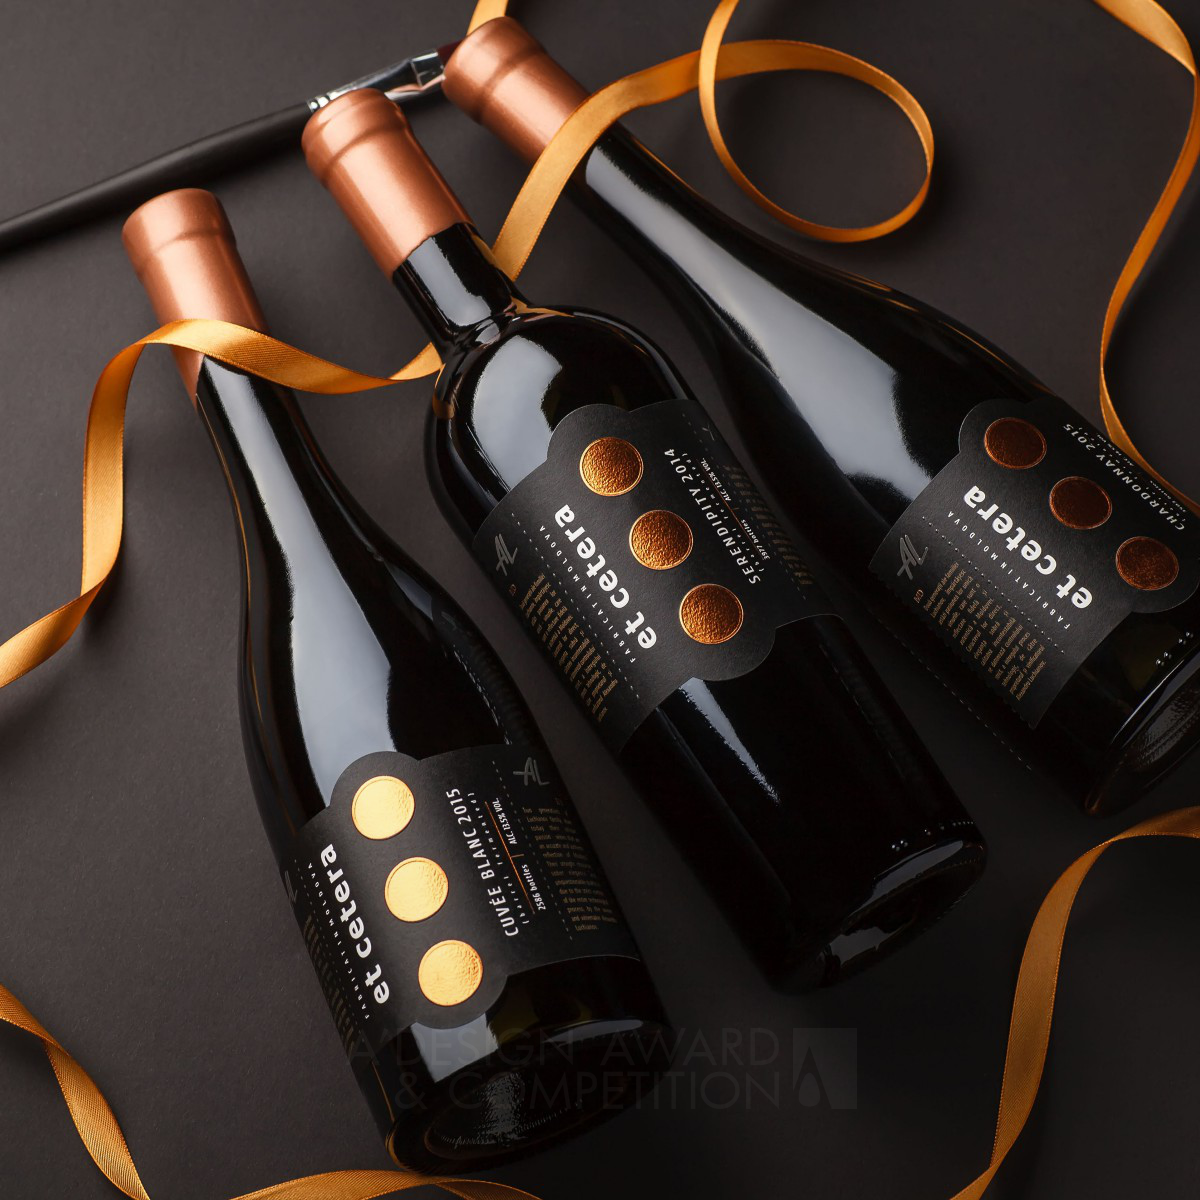 Et Cetera Premium Wine Label by Valerii Sumilov